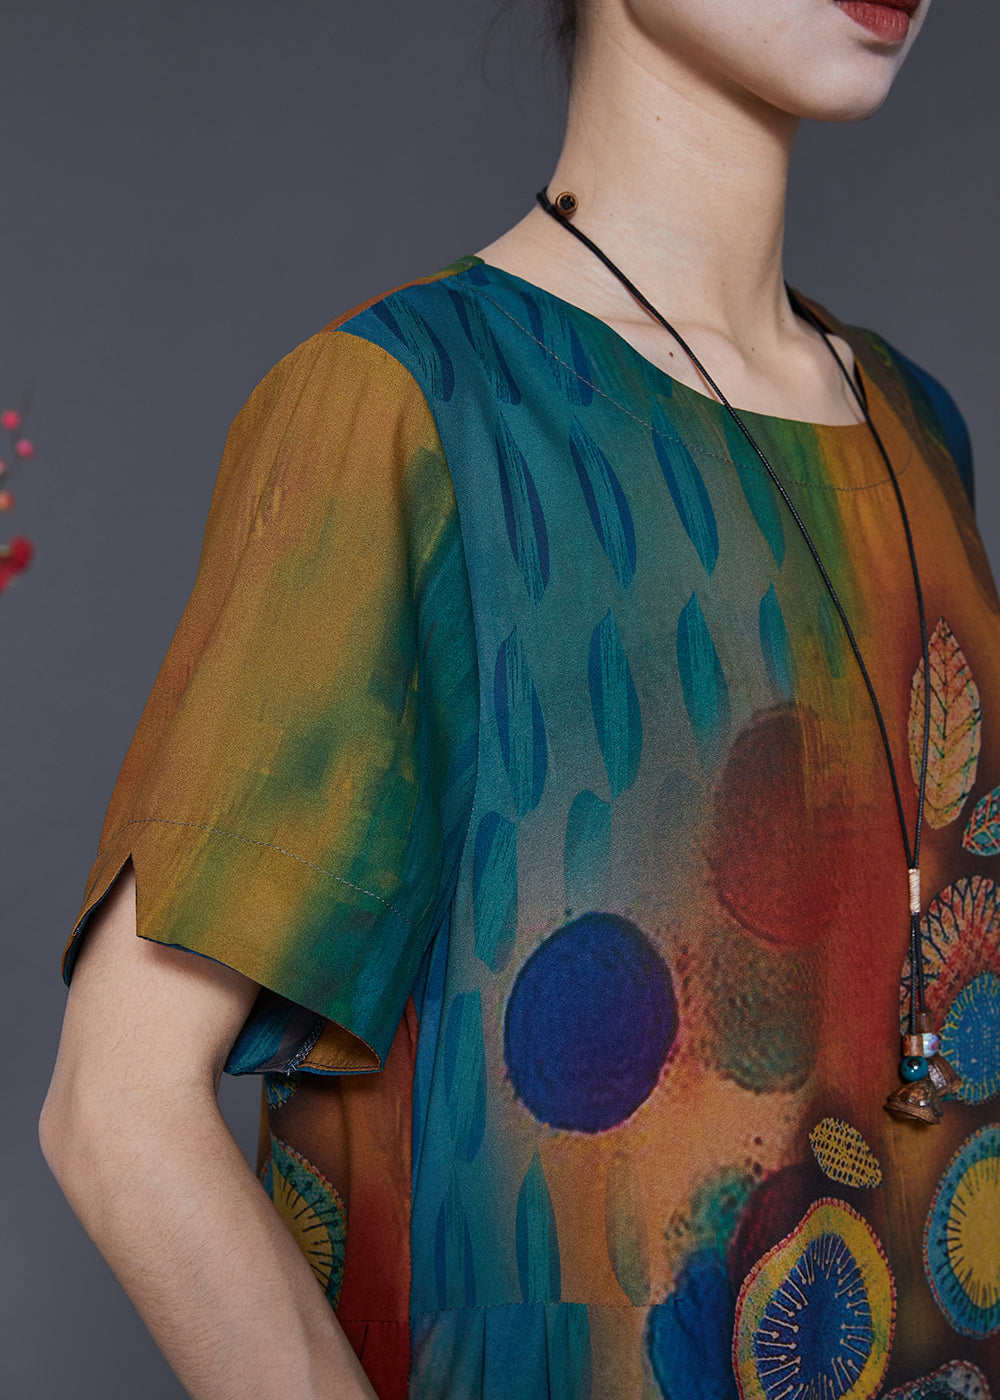 Women Gradient Color Print Silk Maxi Dresses Summer